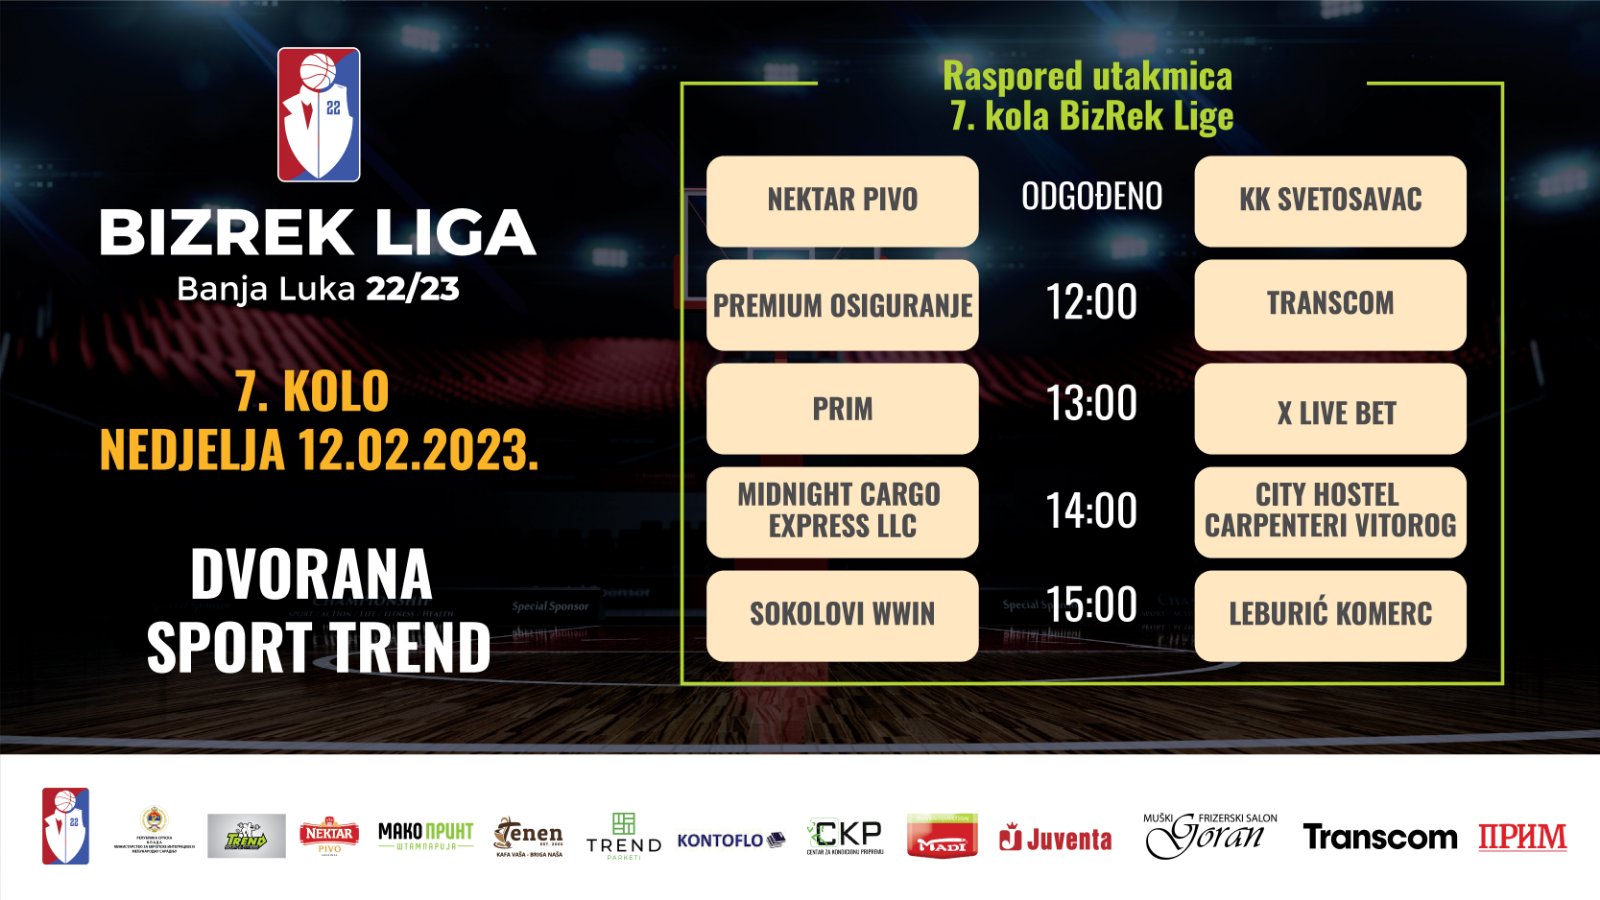 BizRek Liga Banja Luka 2022/23 7.kolo